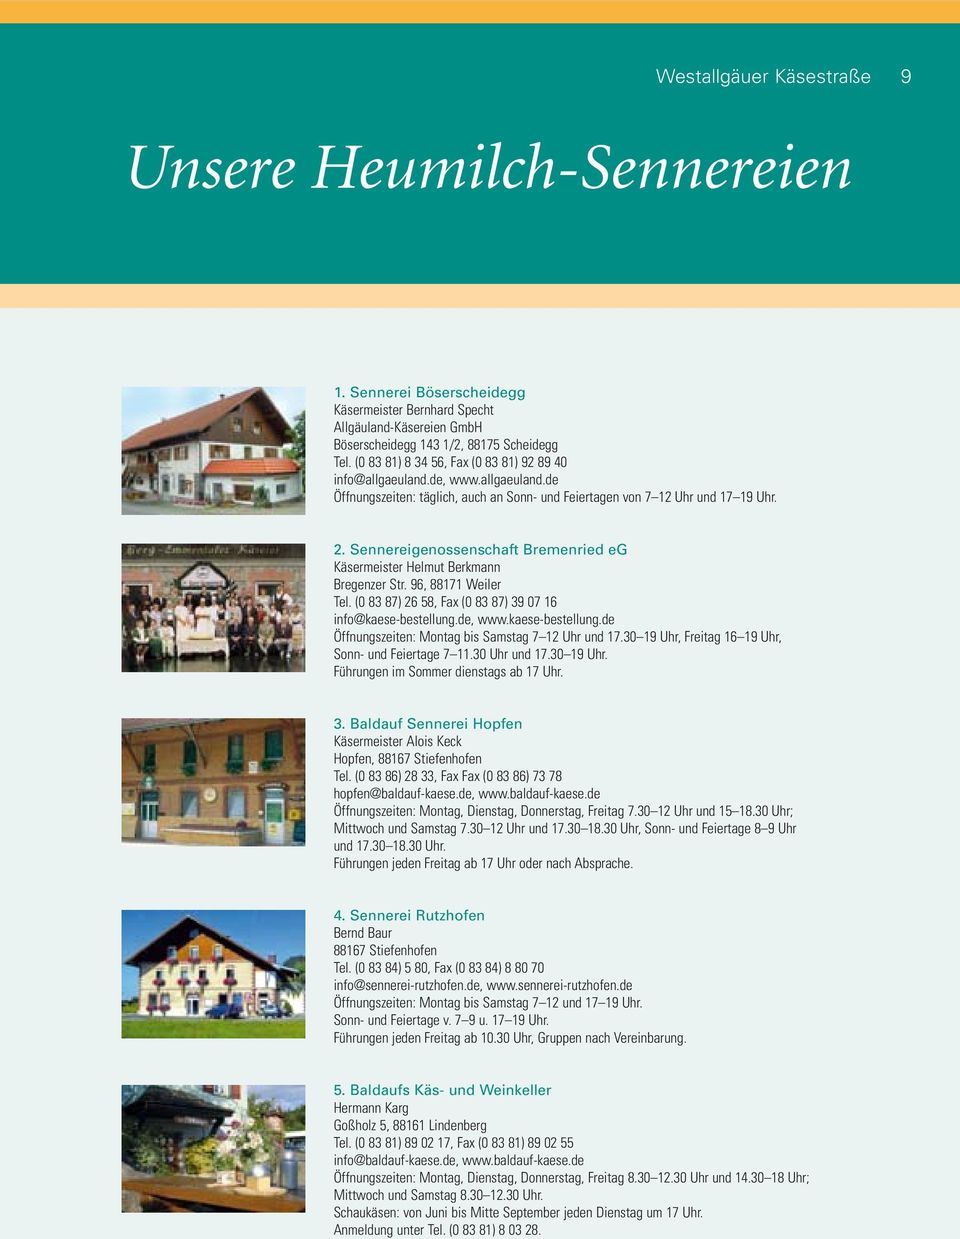 Sennereigenossenschaft Bremenried eg Käsermeister Helmut Berkmann Bregenzer Str. 96, 88171 Weiler Tel. (0 83 87) 26 58, Fax (0 83 87) 39 07 16 info@kaese-bestellung.